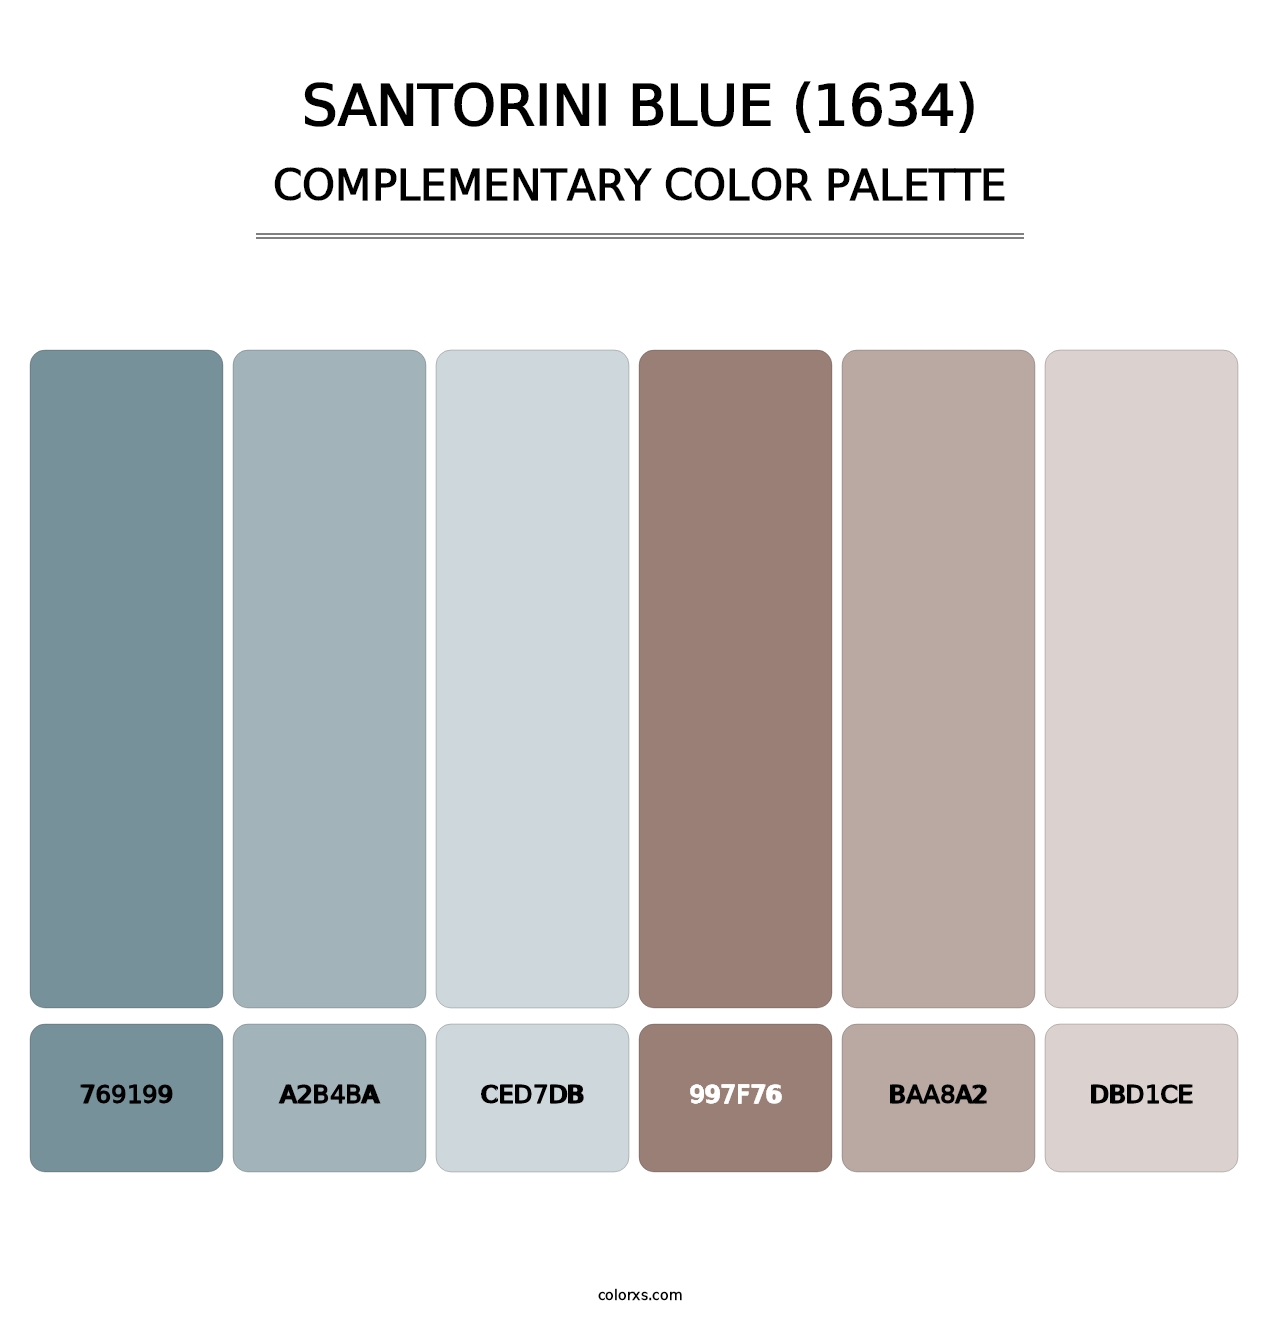 Santorini Blue (1634) - Complementary Color Palette